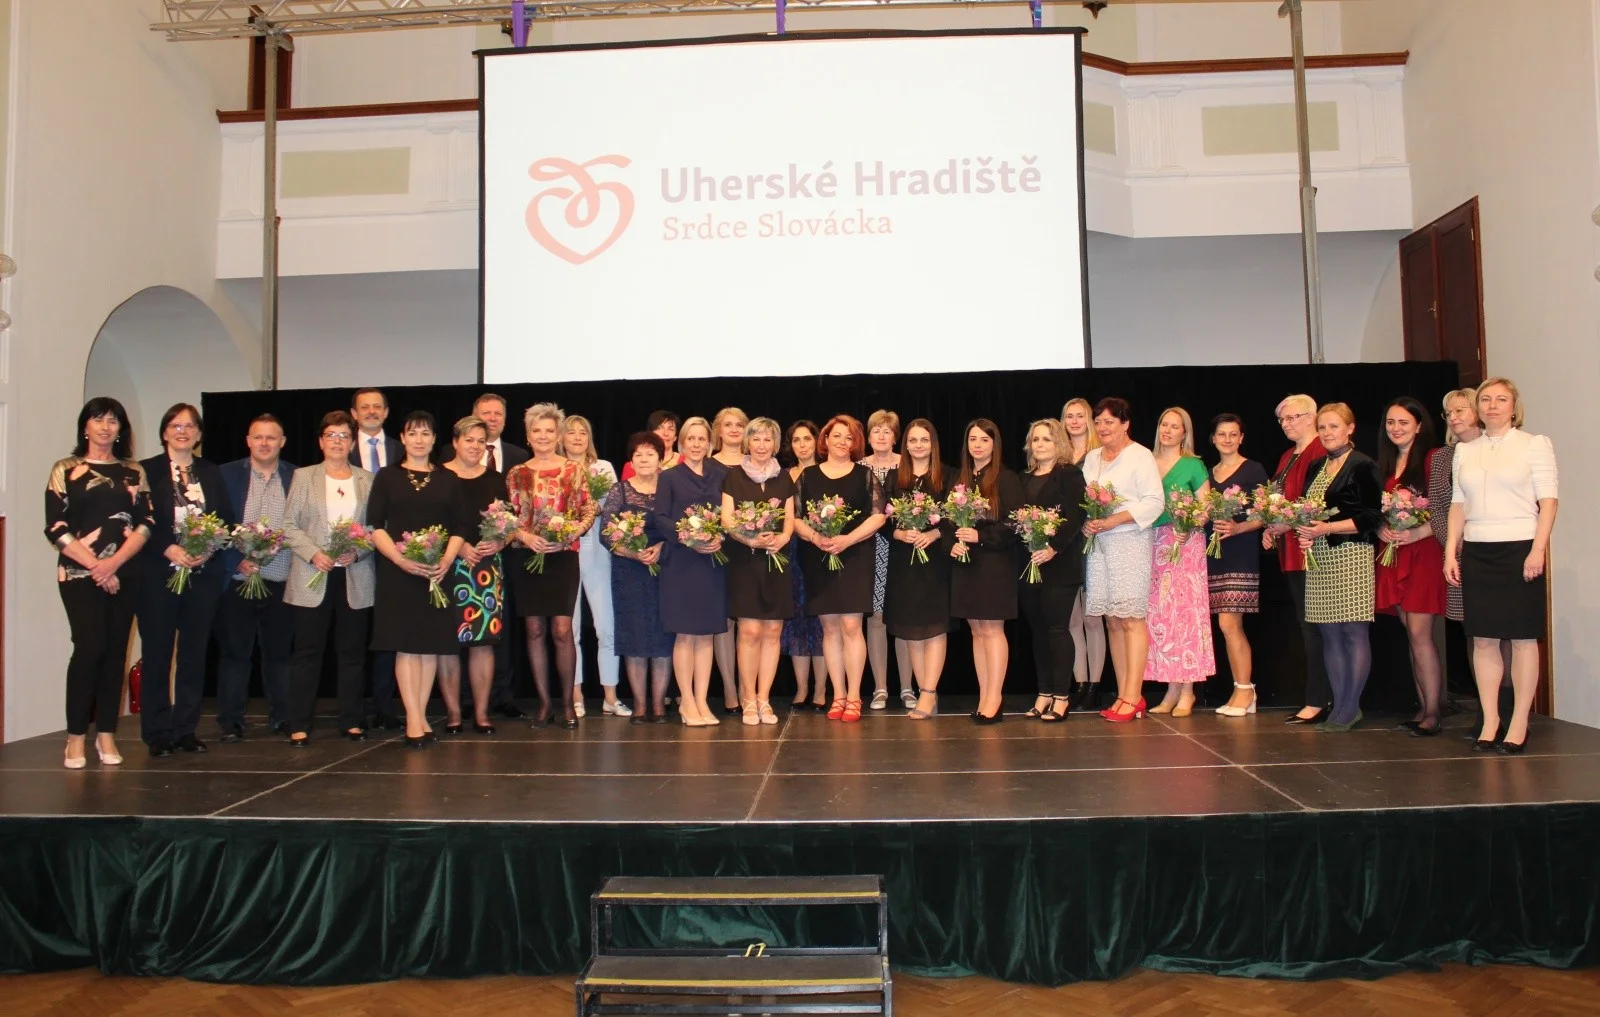 Ocenění učitelů škol města Uherského Hradiště